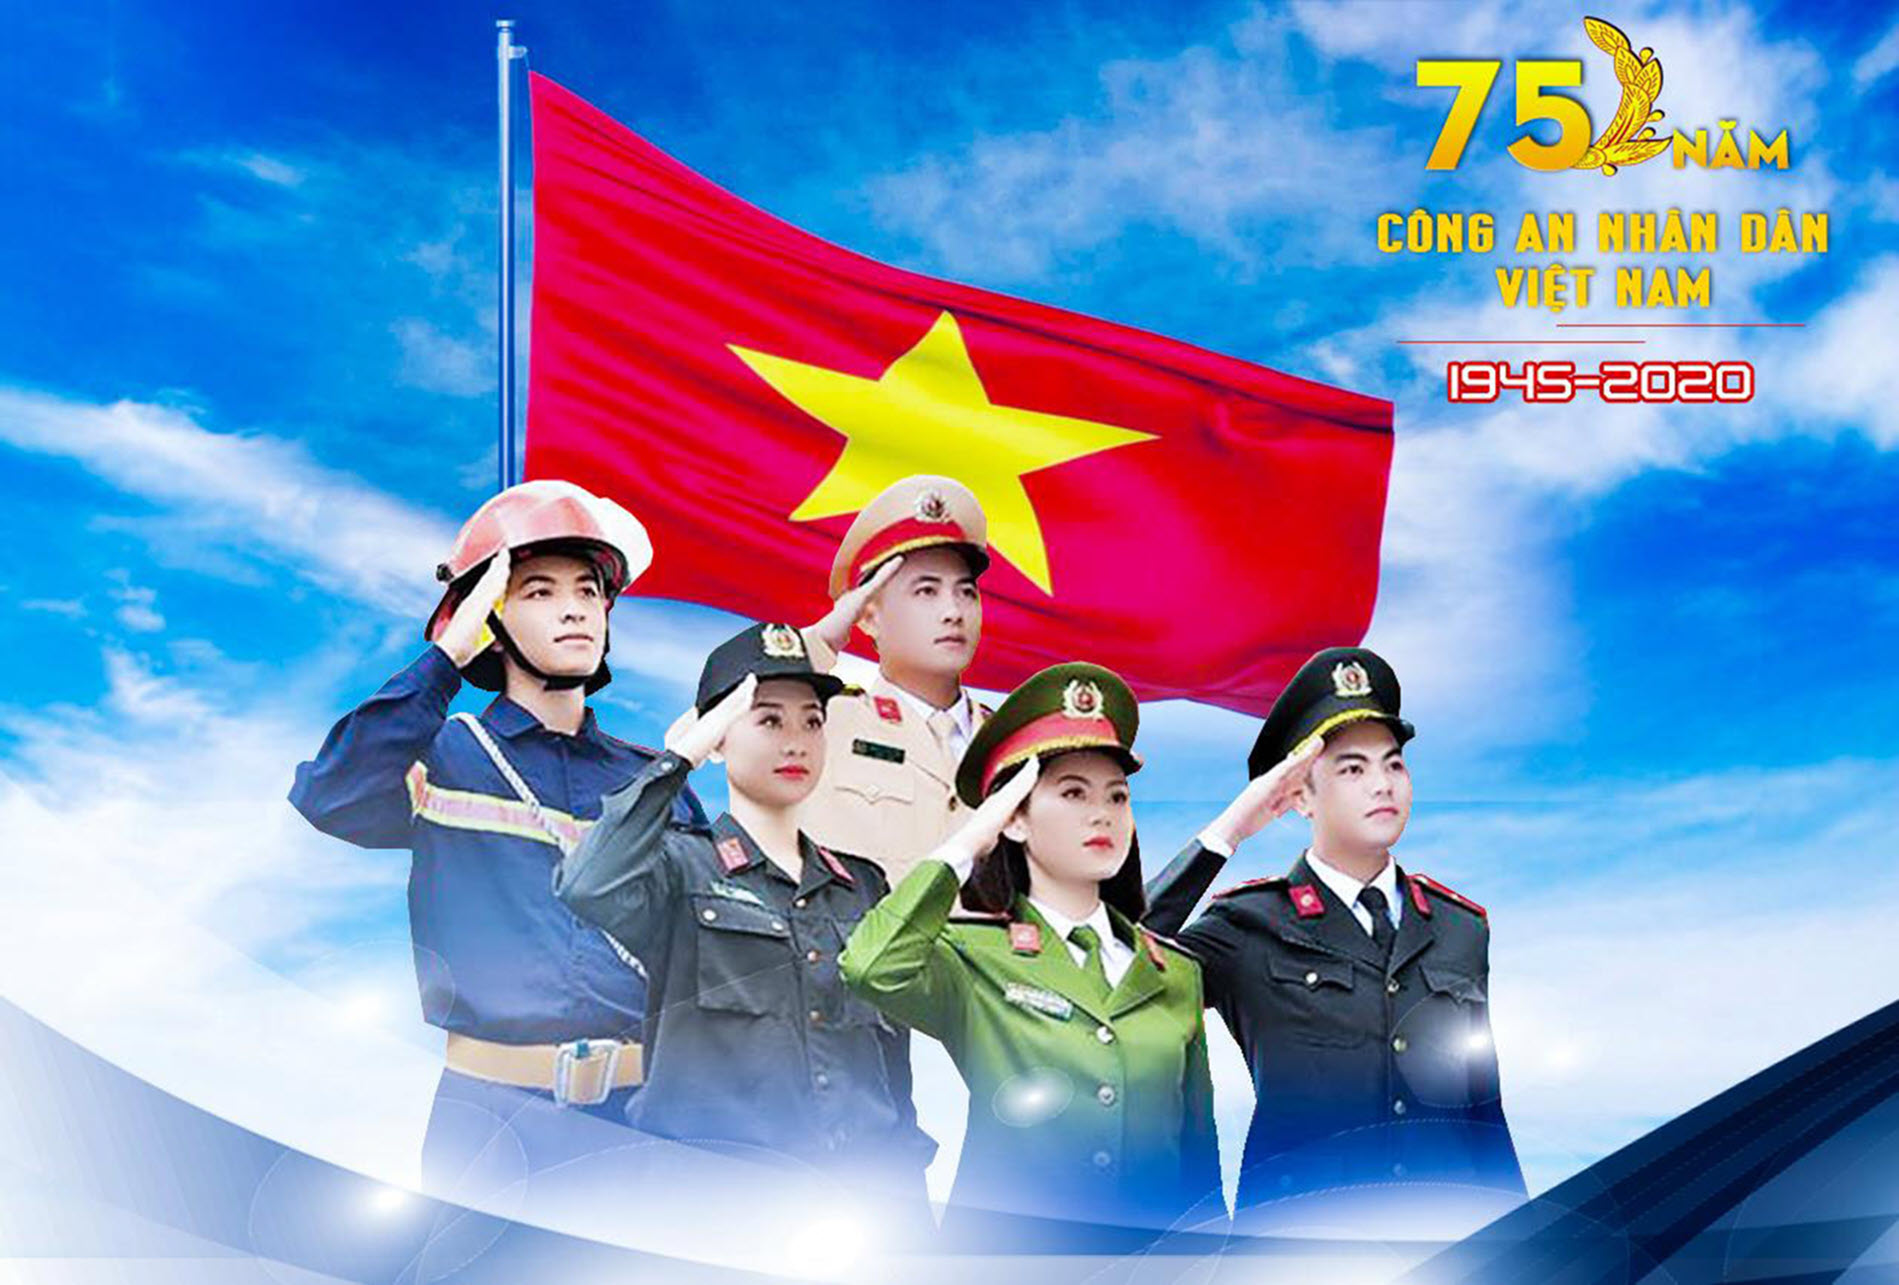 Ngắm trang phục mới của lực lượng công an nhân dân Đăng trên báo Bắc Giang